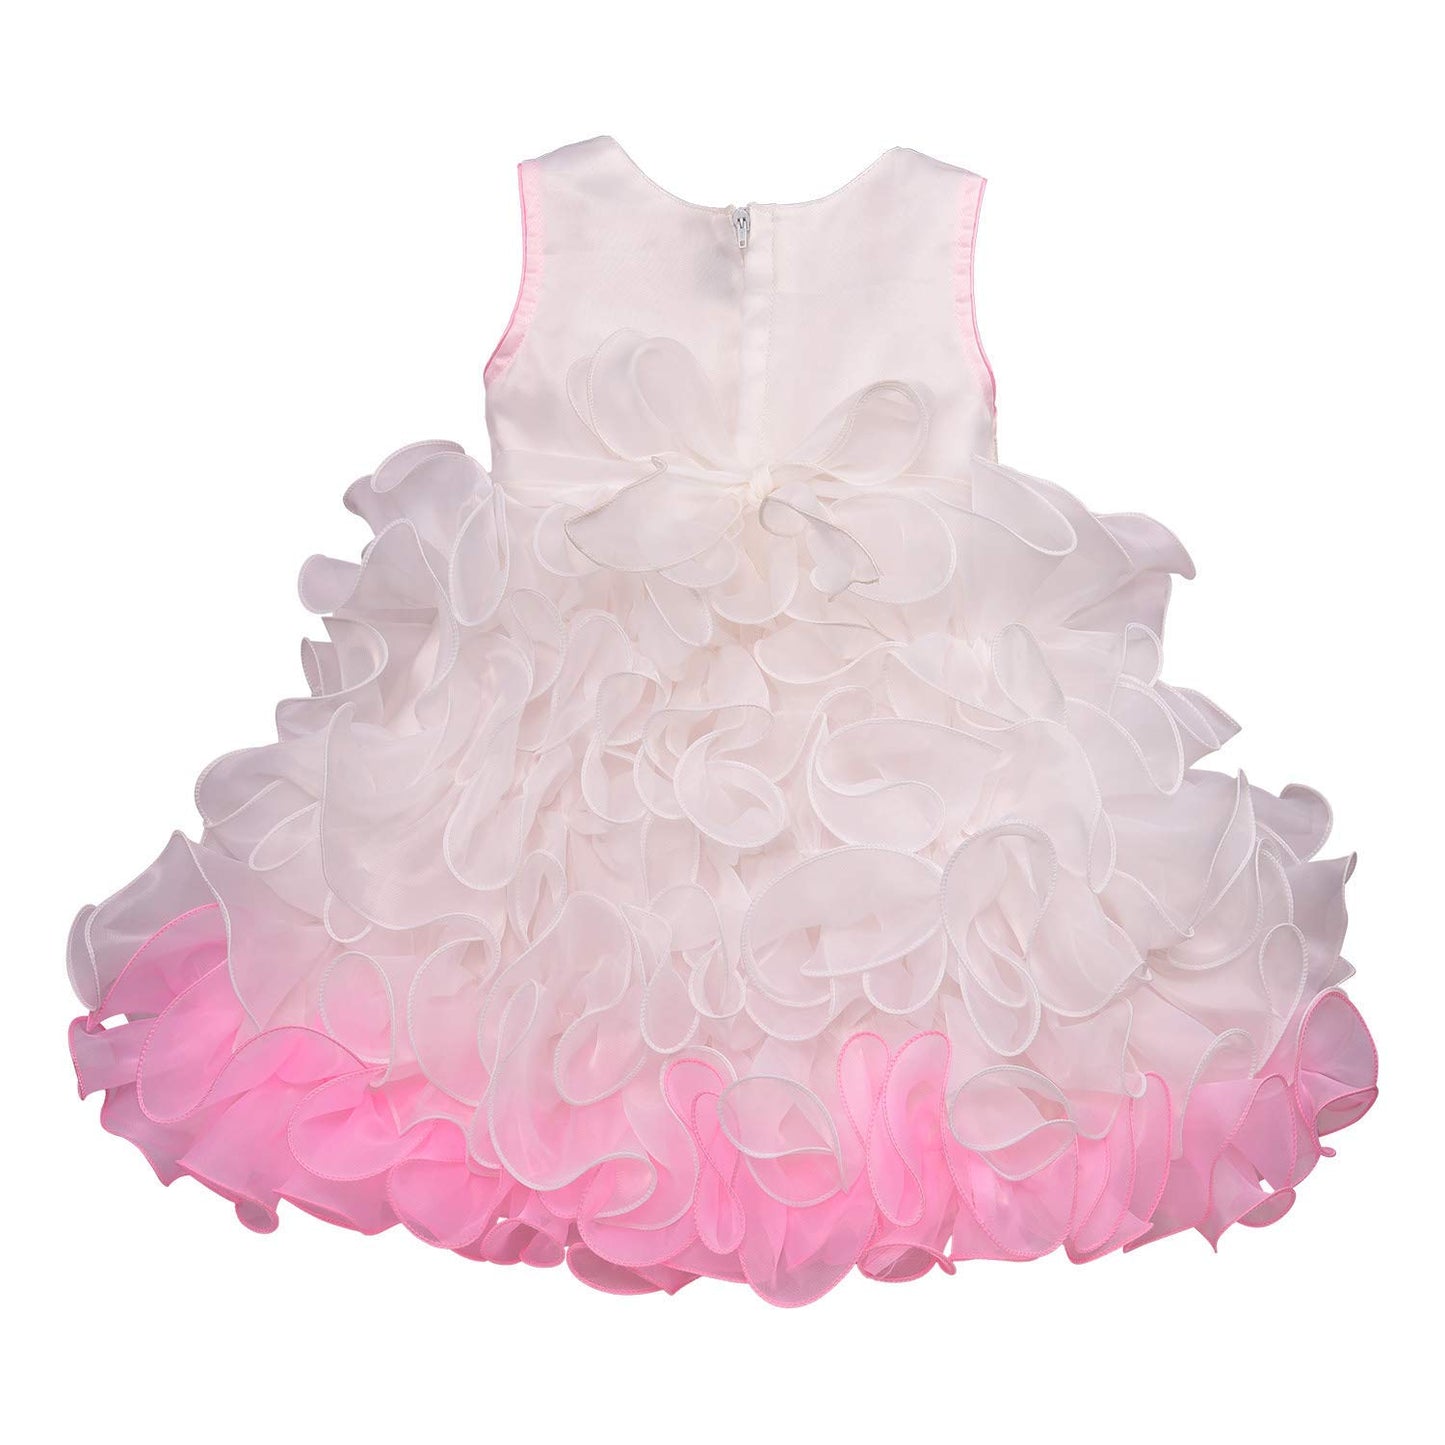 Baby Girls Party Wear Frock Dress bxa170bpnk - Wish Karo Party Wear - frocks Party Wear - baby dress